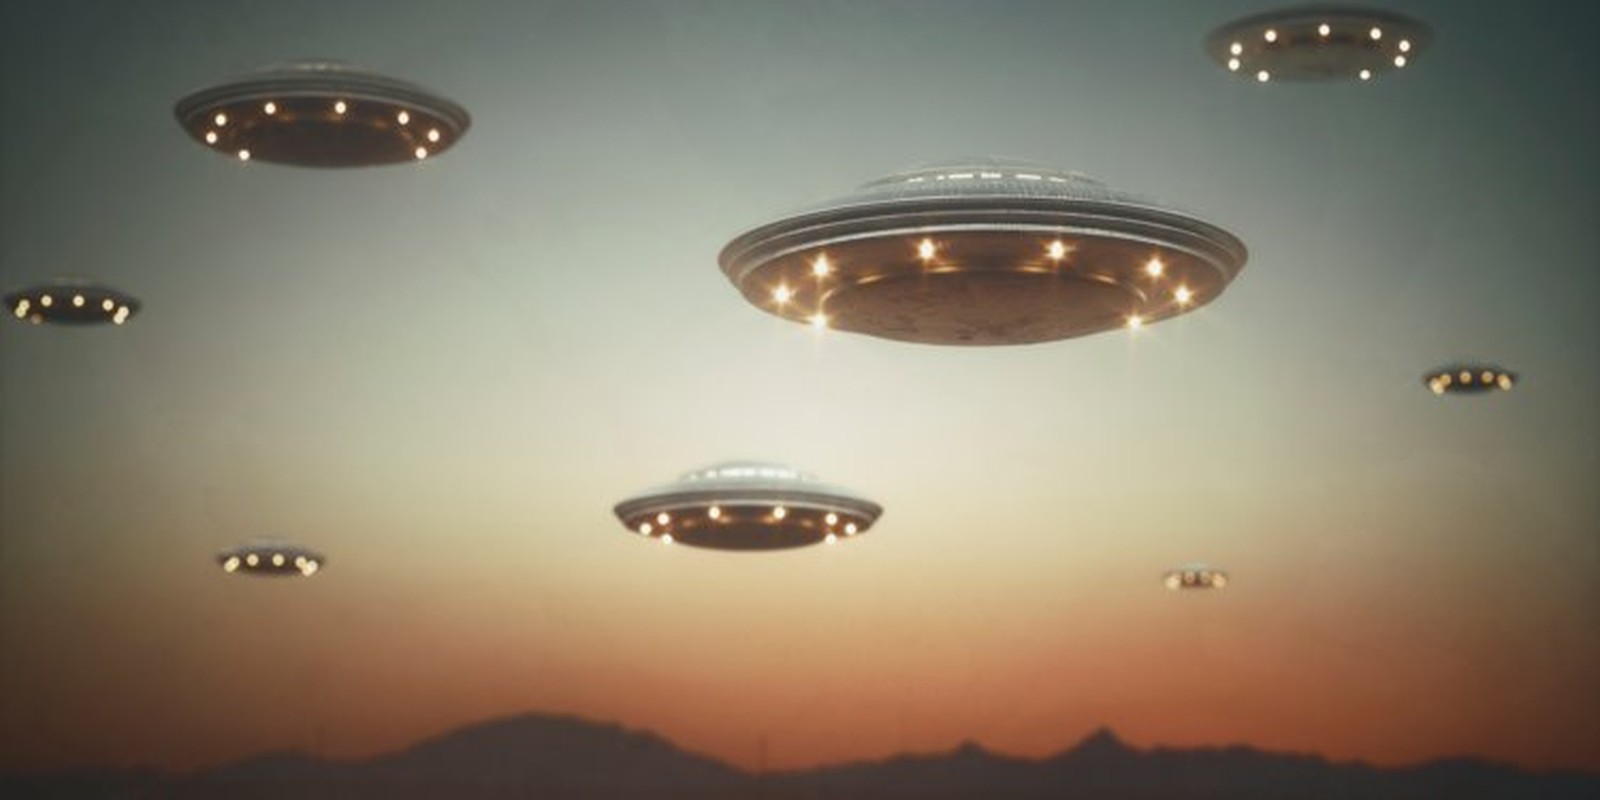 Loi giai cuc soc ve nhung video UFO Hai quan My xac nhan-Hinh-9